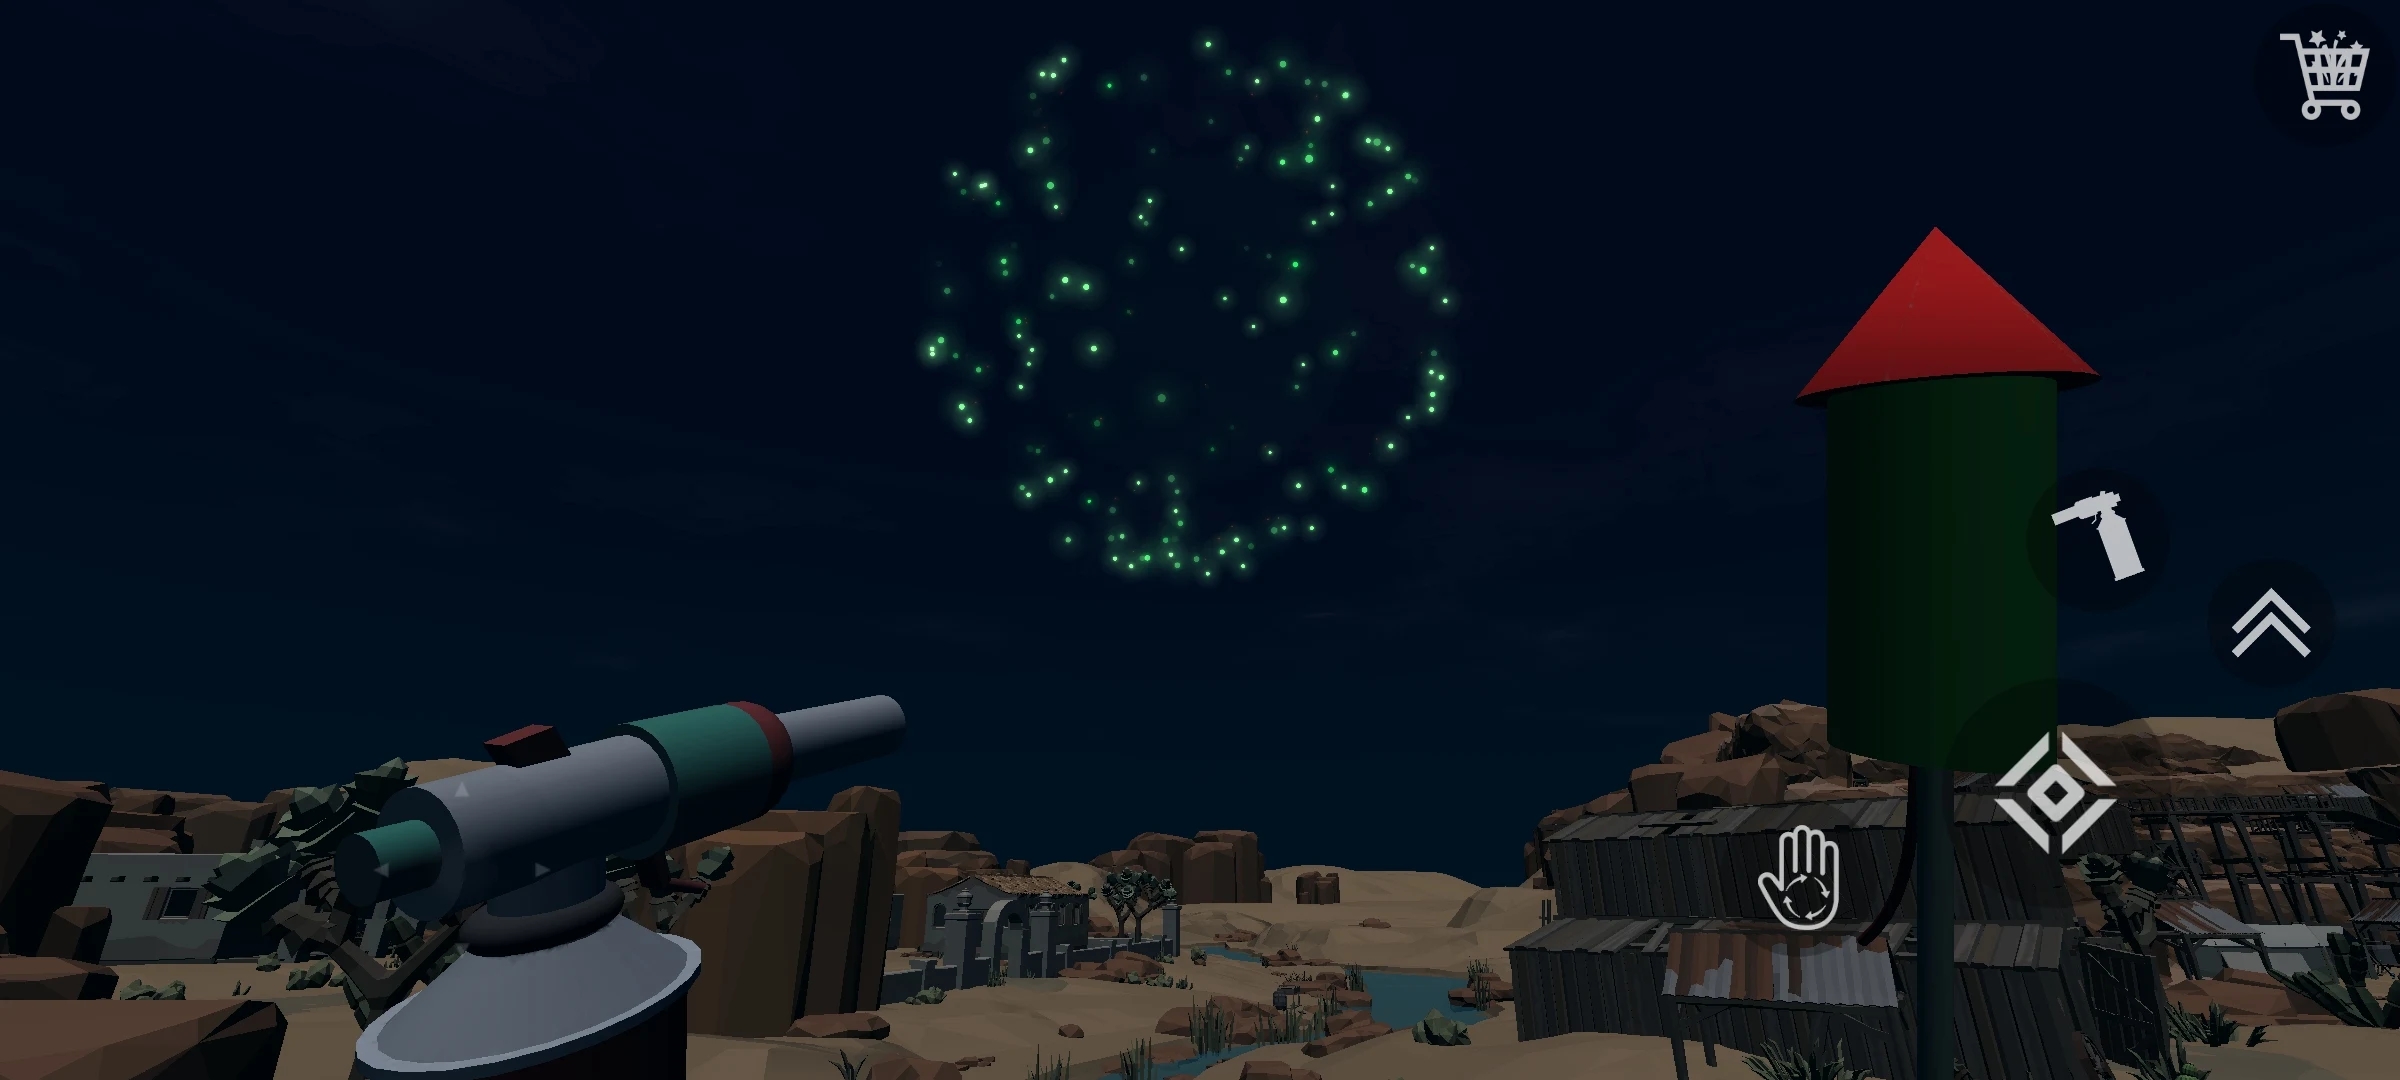 ̻ģ3D°(Fireworks Simulator 3D)v3.4.6 ׿